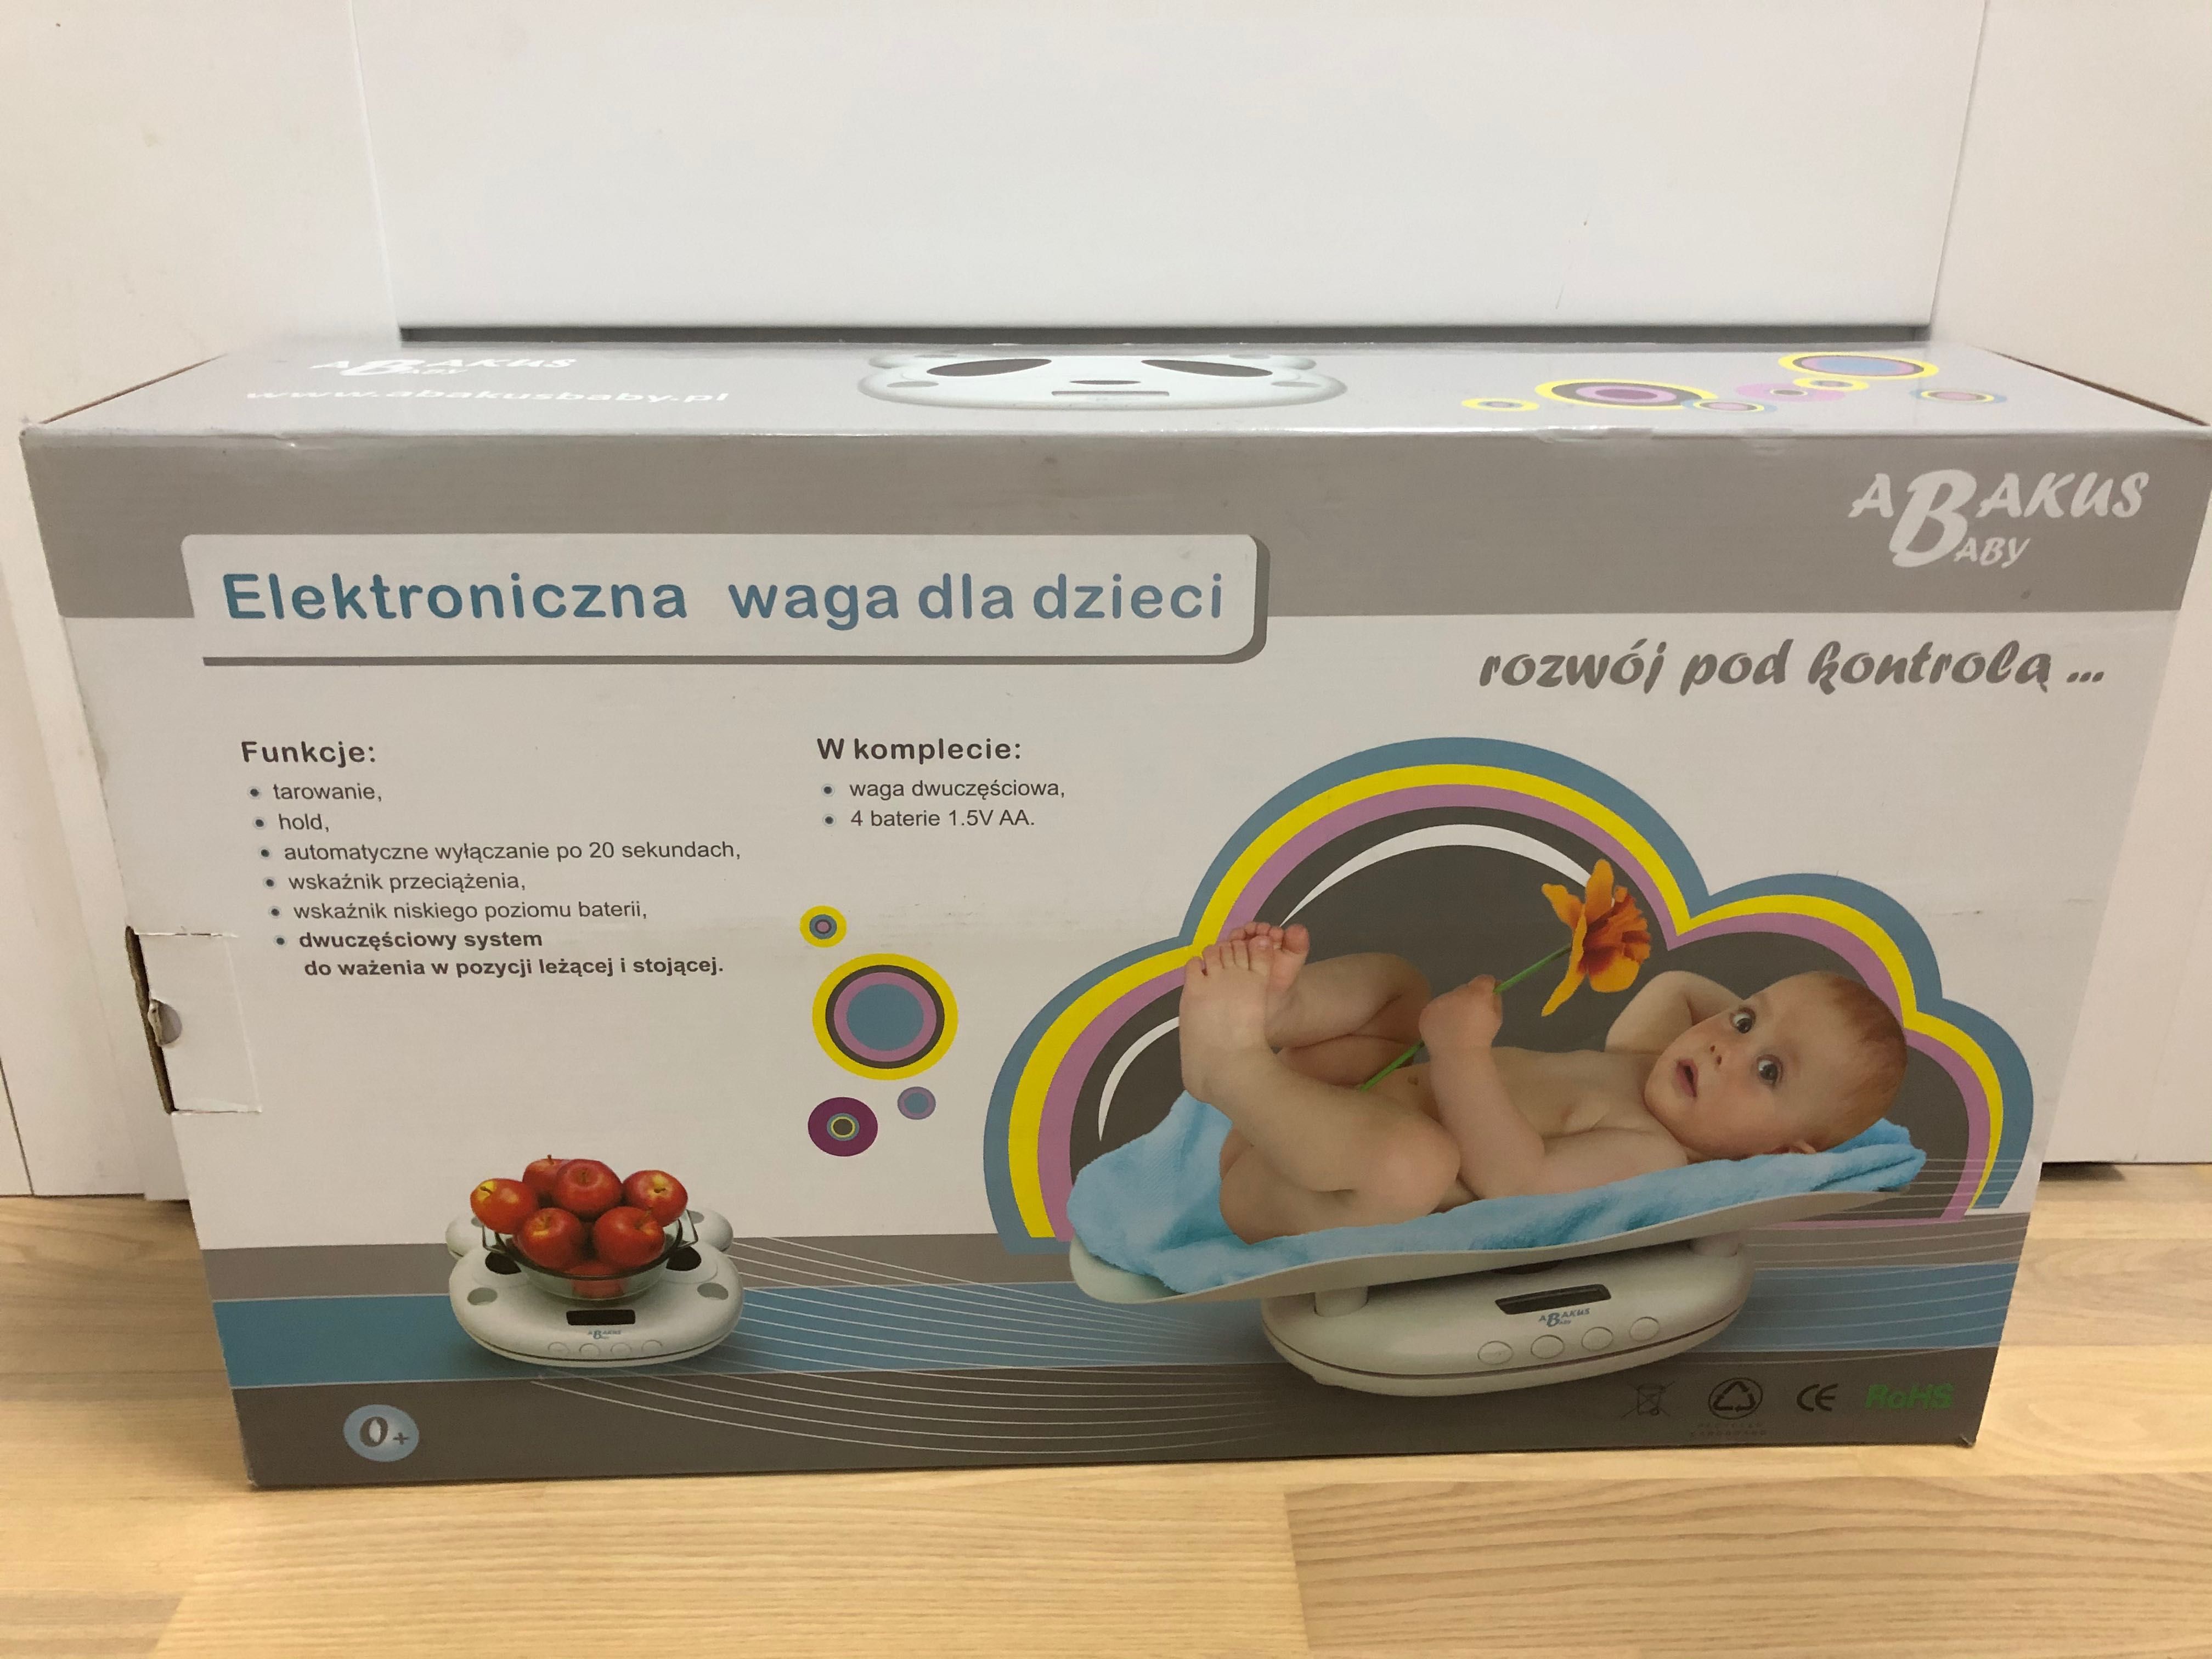 Abakus baby waga dla niemowląt ze zdejmowana taca